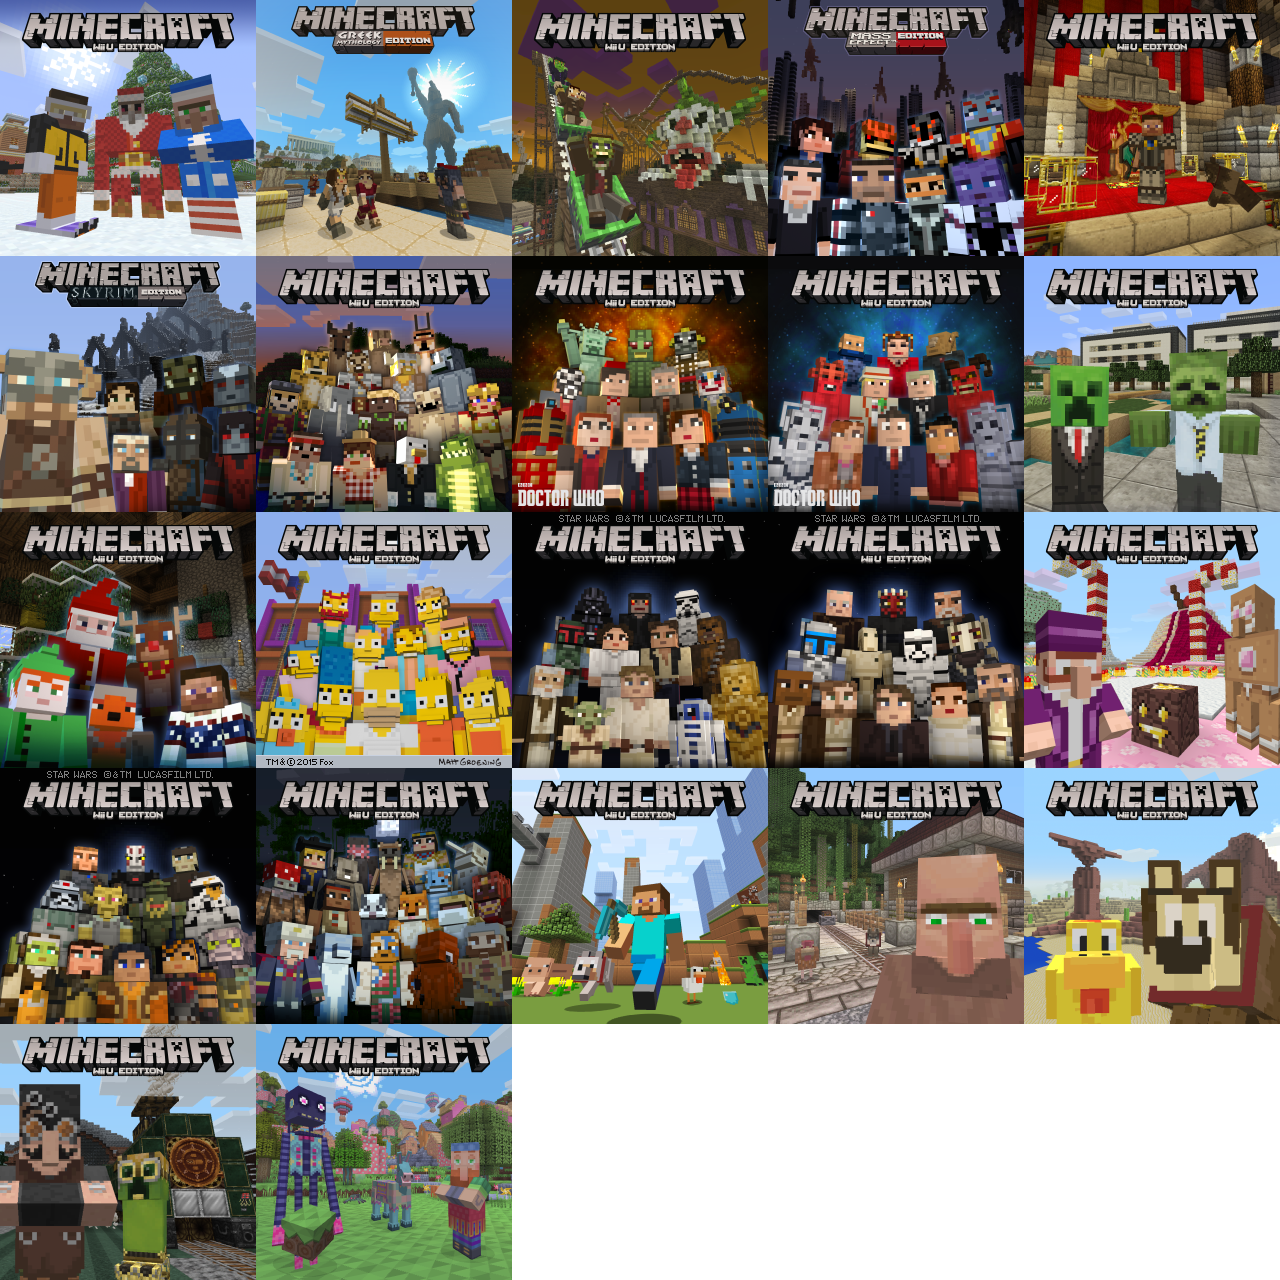 Wii U Minecraft Wii U Edition Dlc Images The Spriters Resource